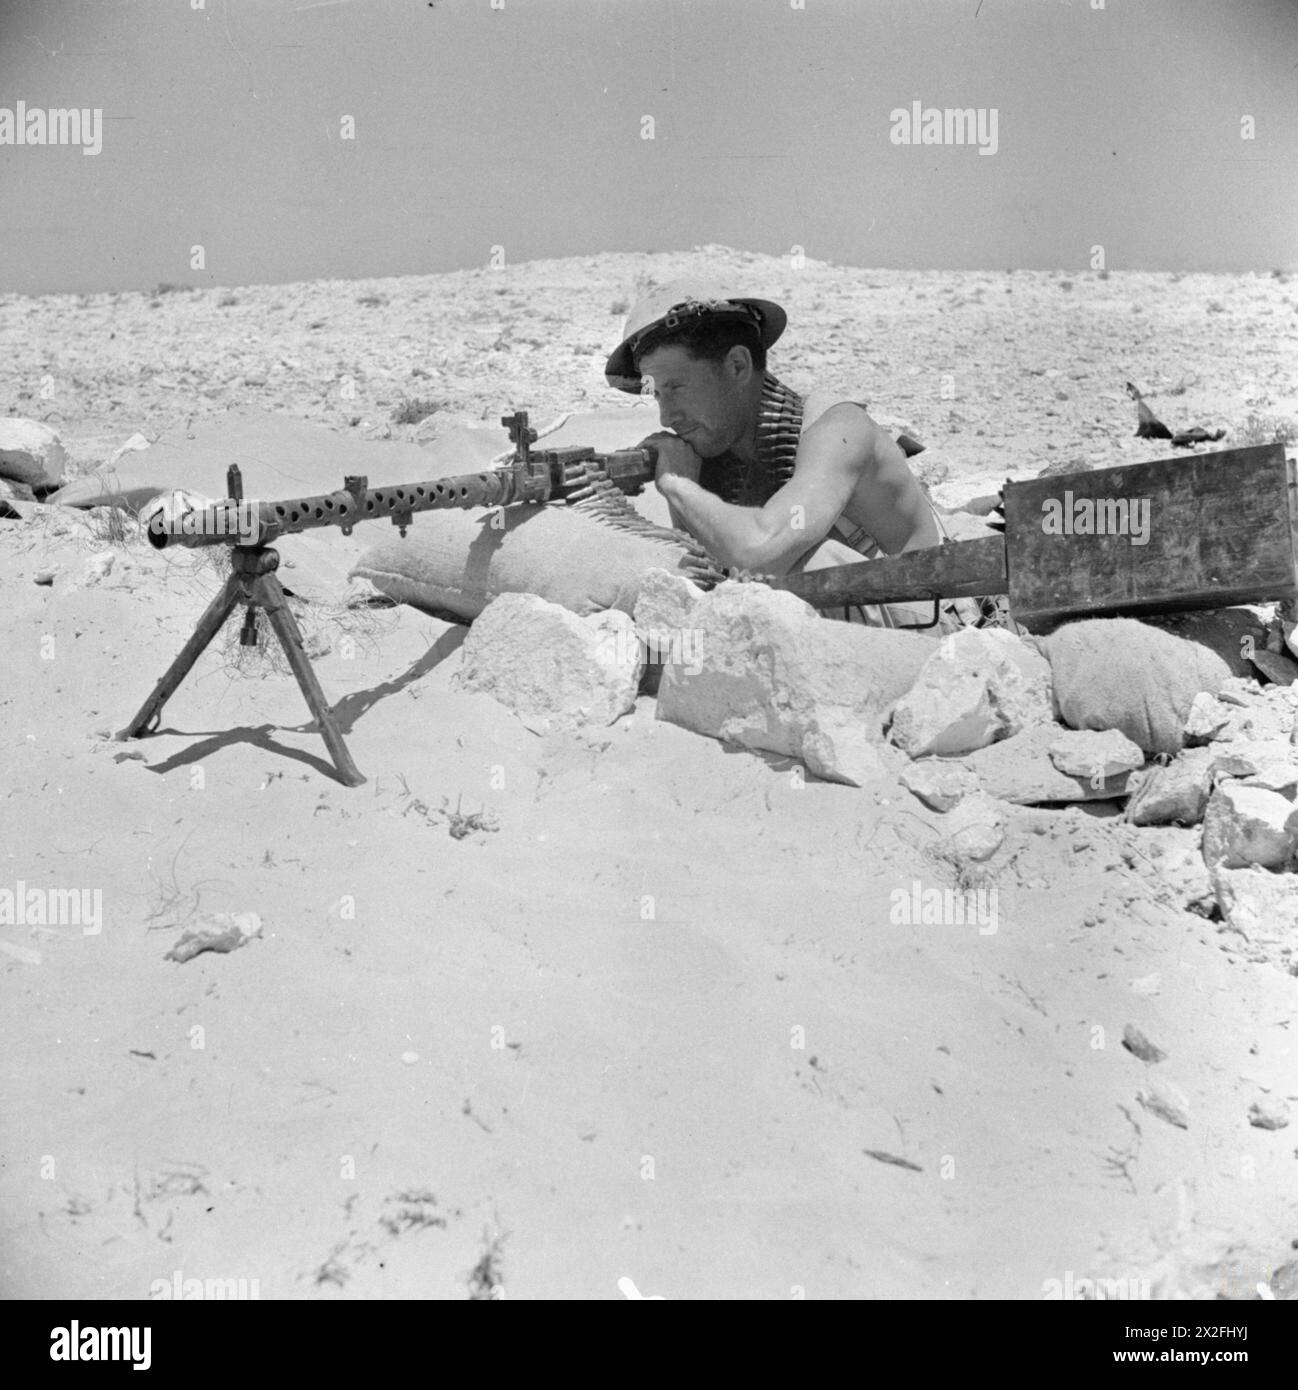 FORCES DU COMMONWEALTH EN AFRIQUE DU NORD 1942 - un soldat australien avec une mitrailleuse allemande MG 34 capturée, 25 juillet 1942 Armée australienne Banque D'Images